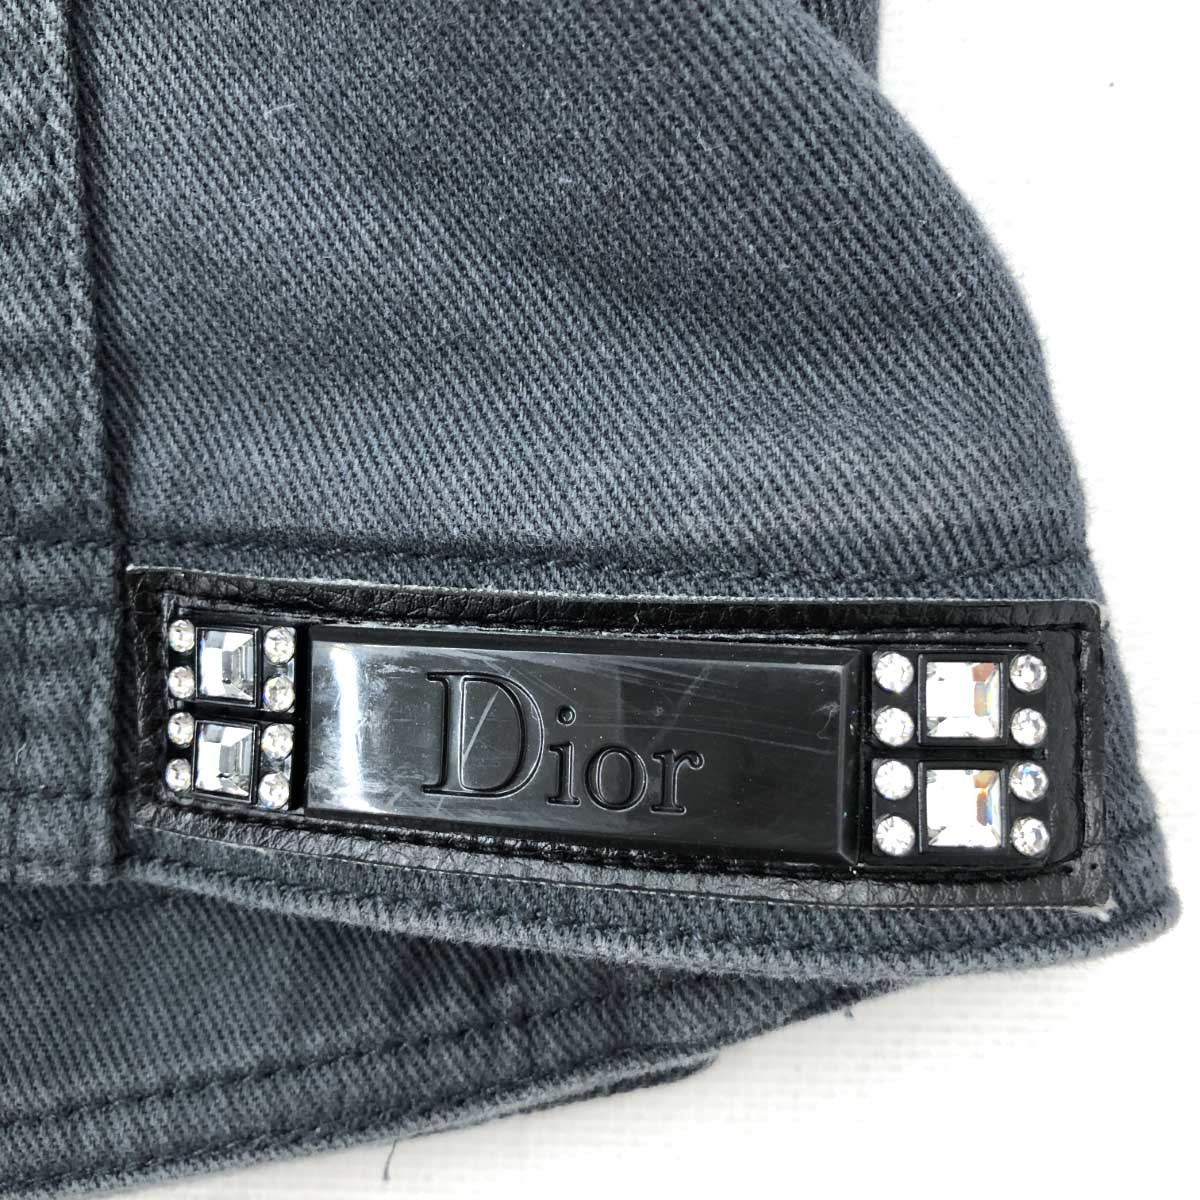 ◆Christian Dior クリスチャンディオール ジャケット サイズ38◆ グレー レディース アウター 2007年/ガリアーノ期_画像4